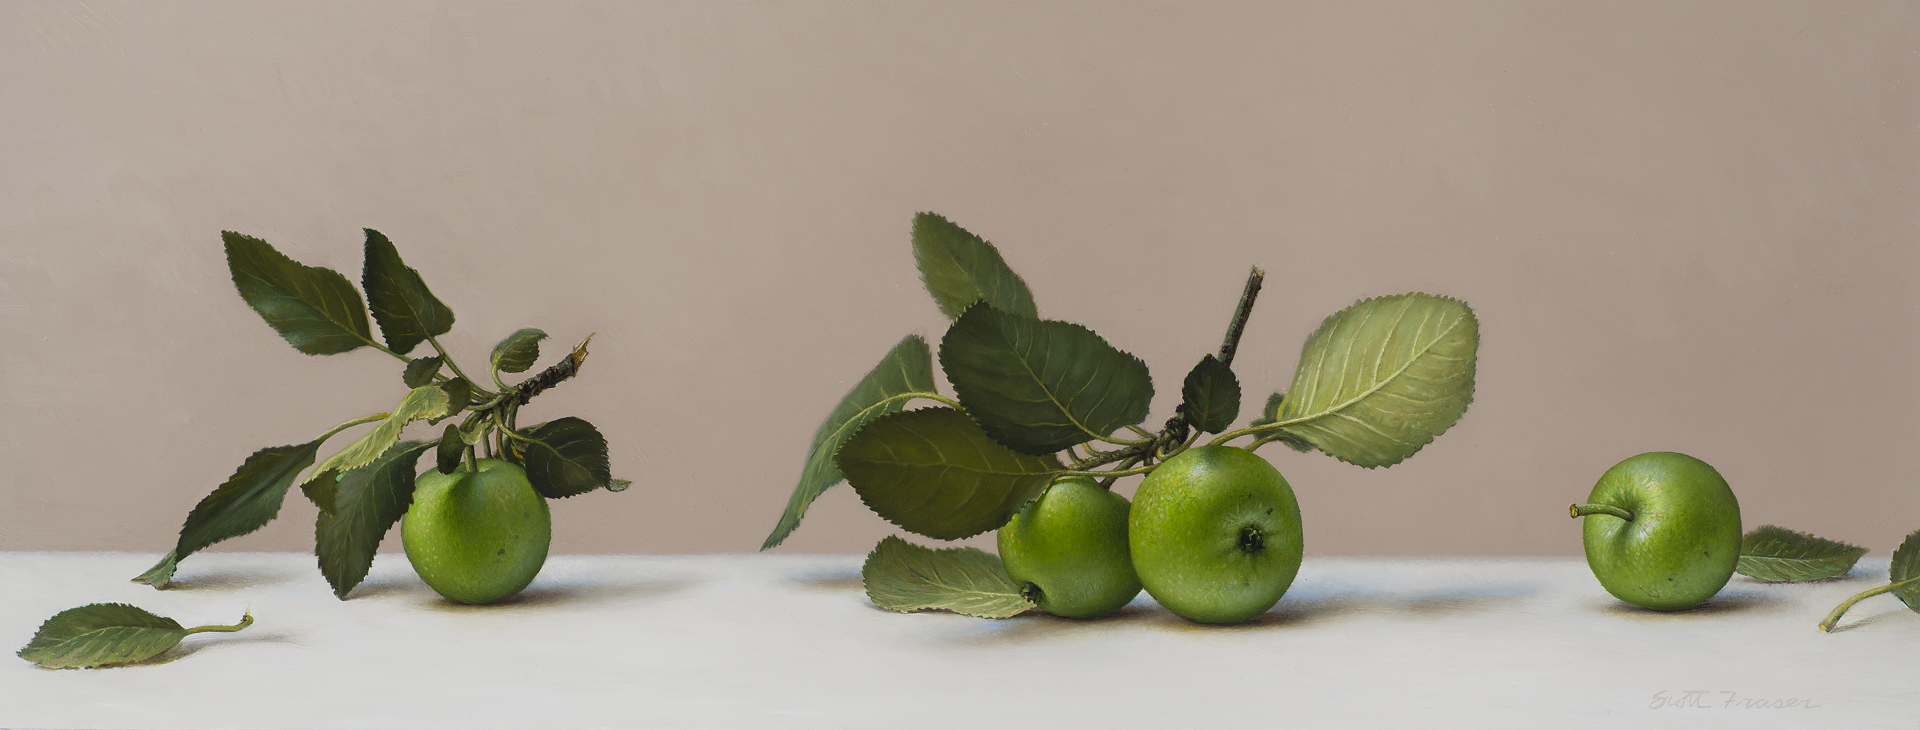 Rogers Grove Apples by Scott Fraser